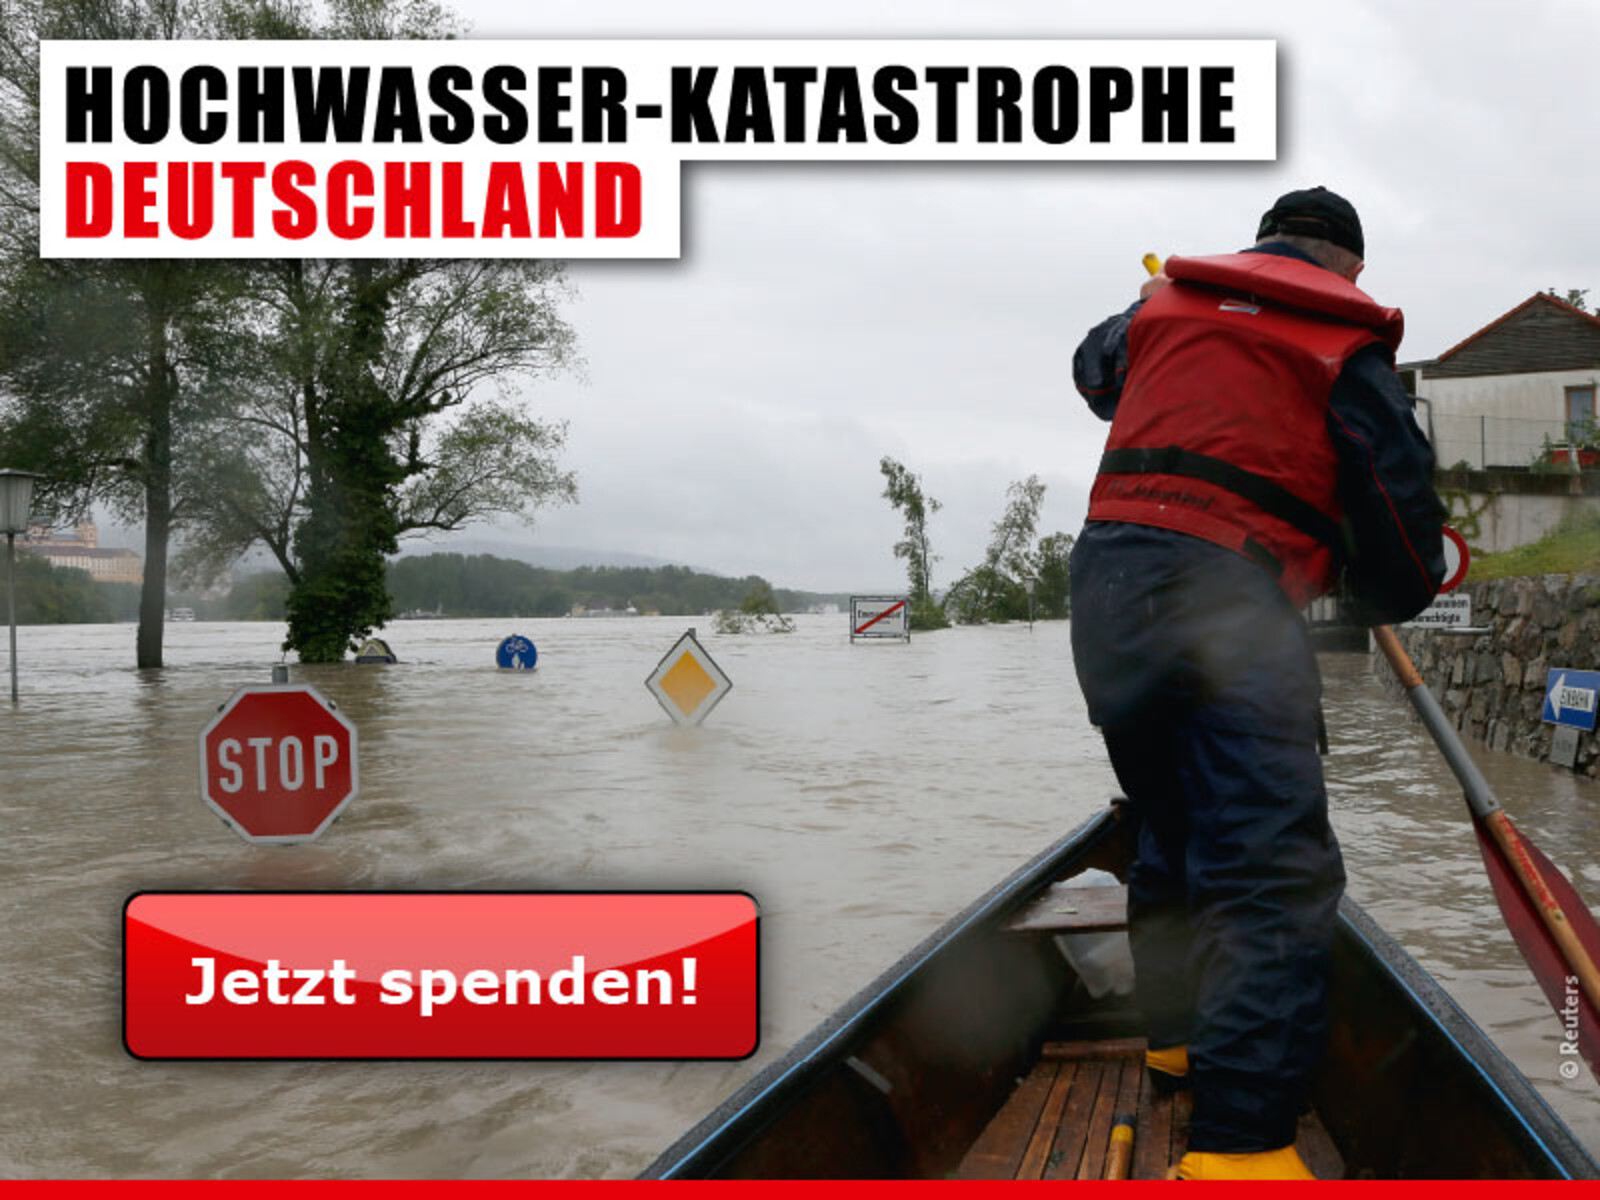 Hochwasser-Katastrophe Deutschland - Jetzt spenden!